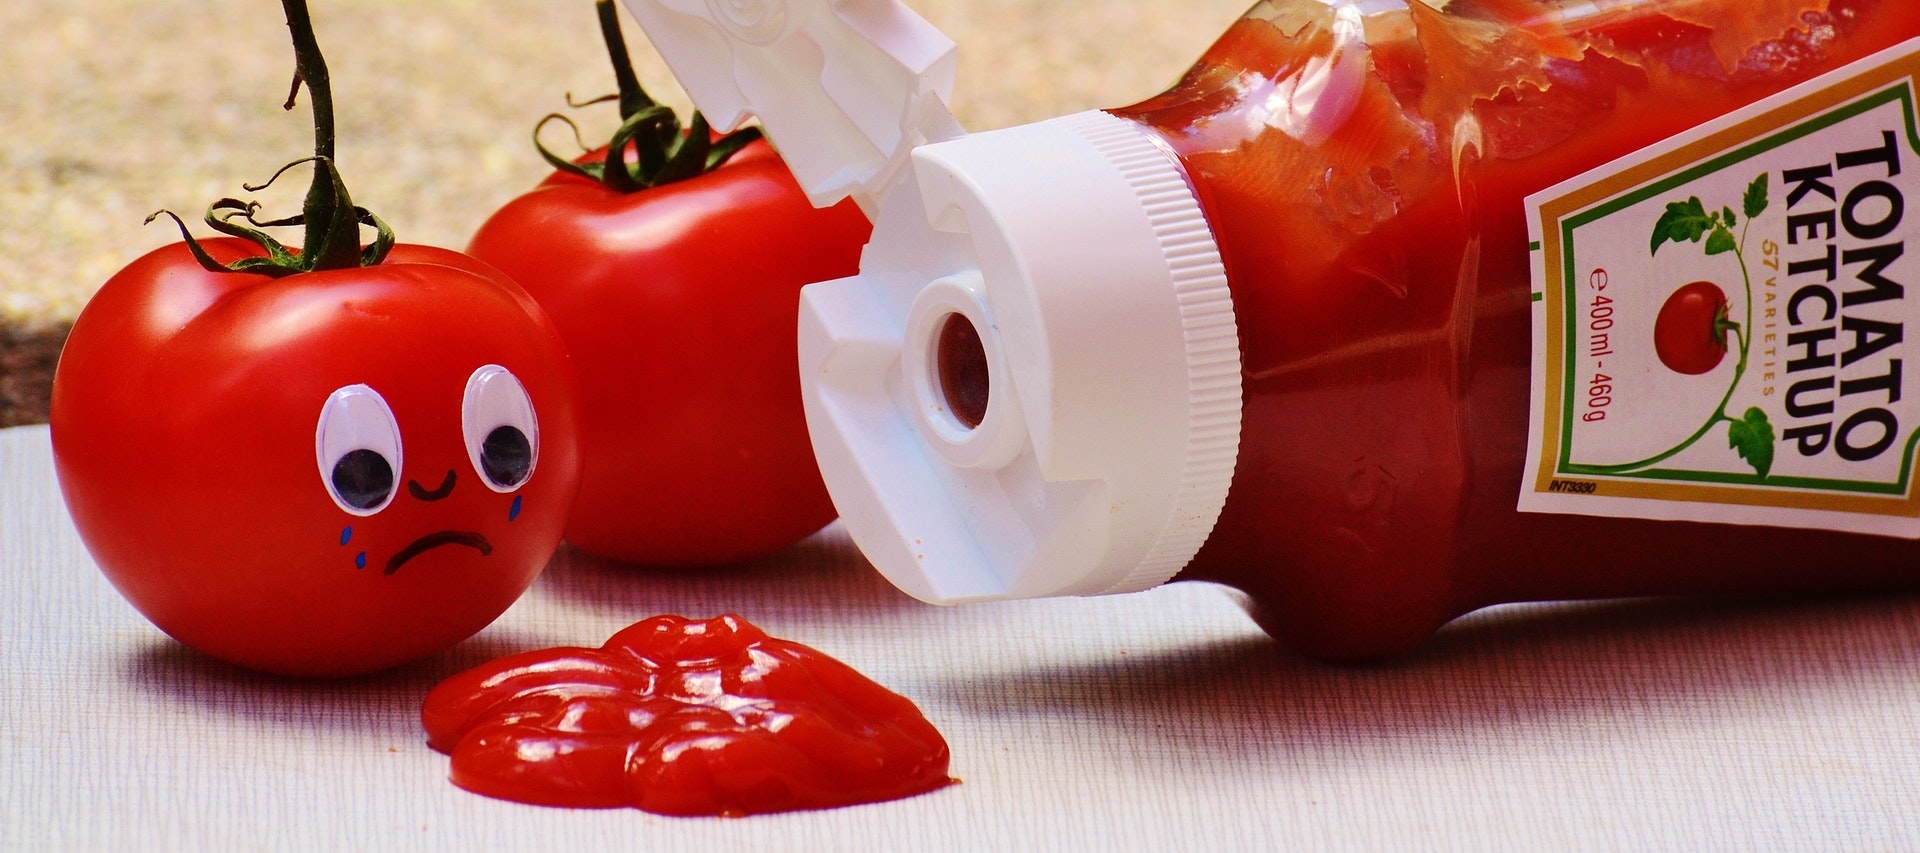 tomato-crying-on-tomato-ketchup